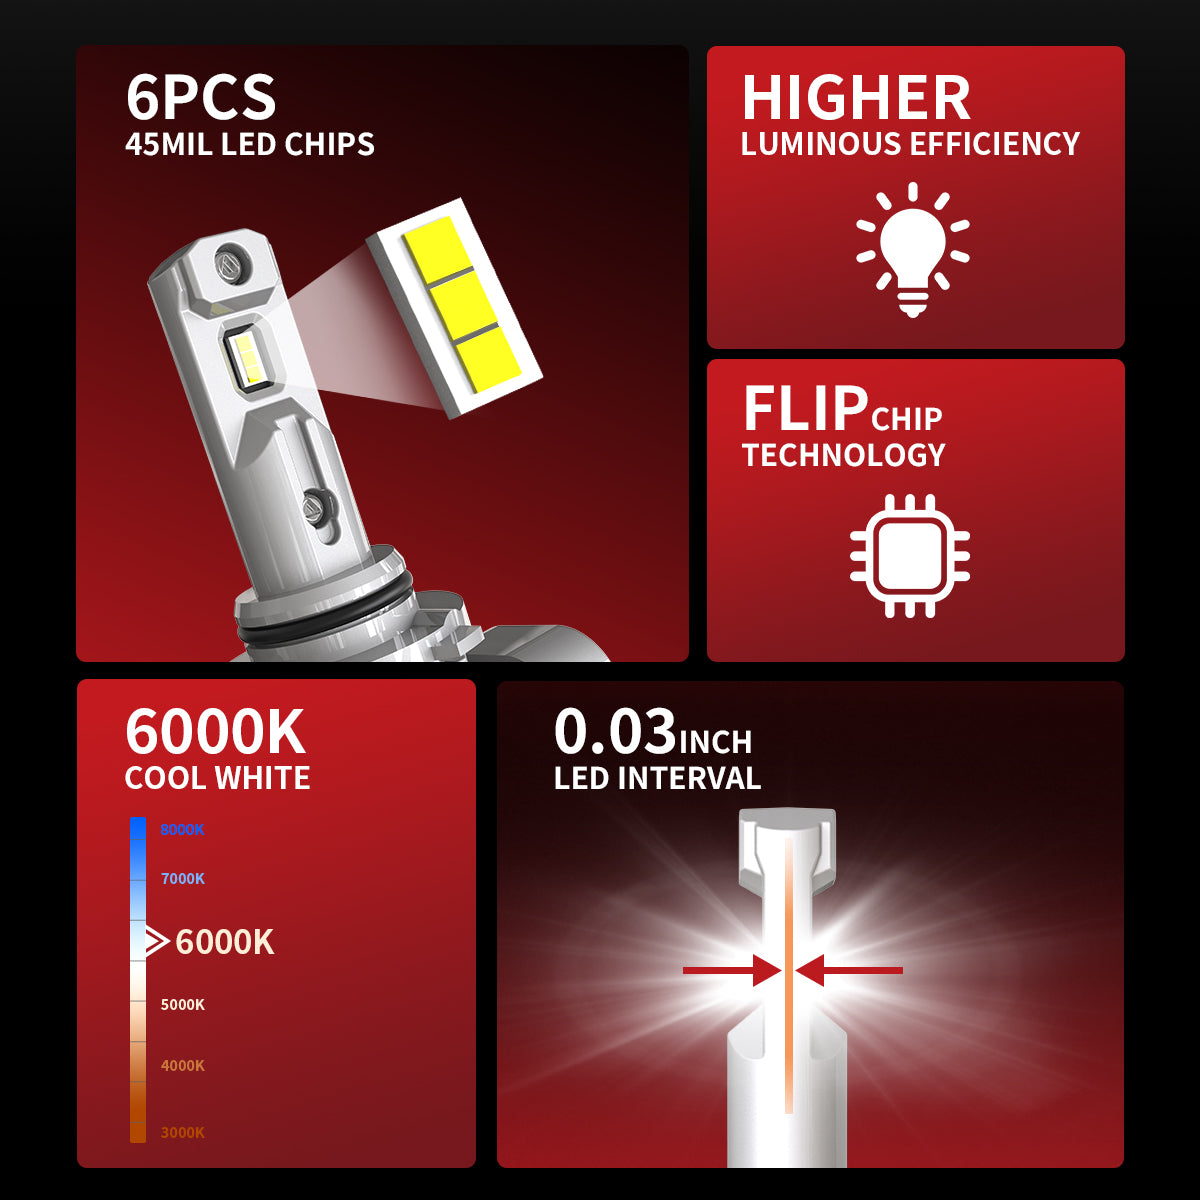 Lasfit 9005 HB3 LED Headlight Bulbs,Plug and Play,50W 5000LM 6000K  White,LCplus Series